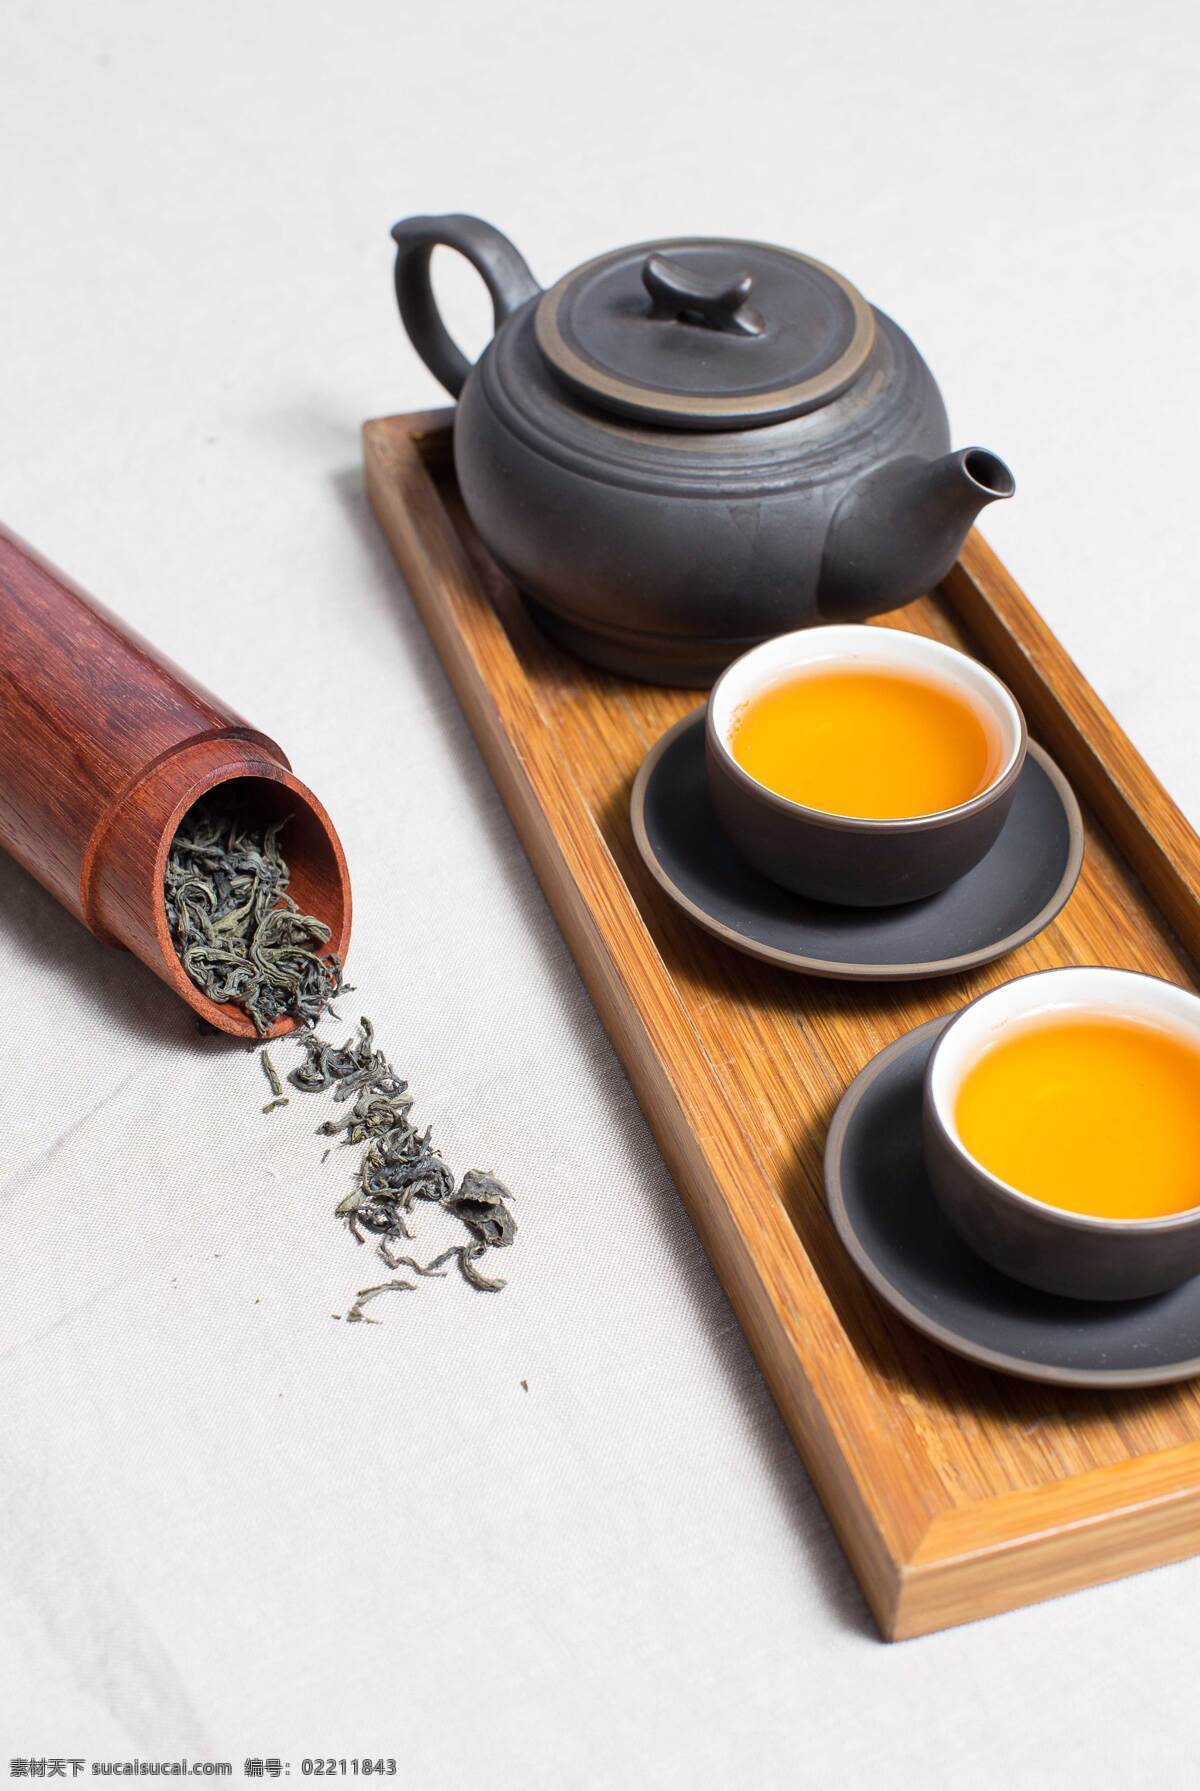 端午 清茶 茶道 中国风 复古 文化 养生 文化艺术 传统文化